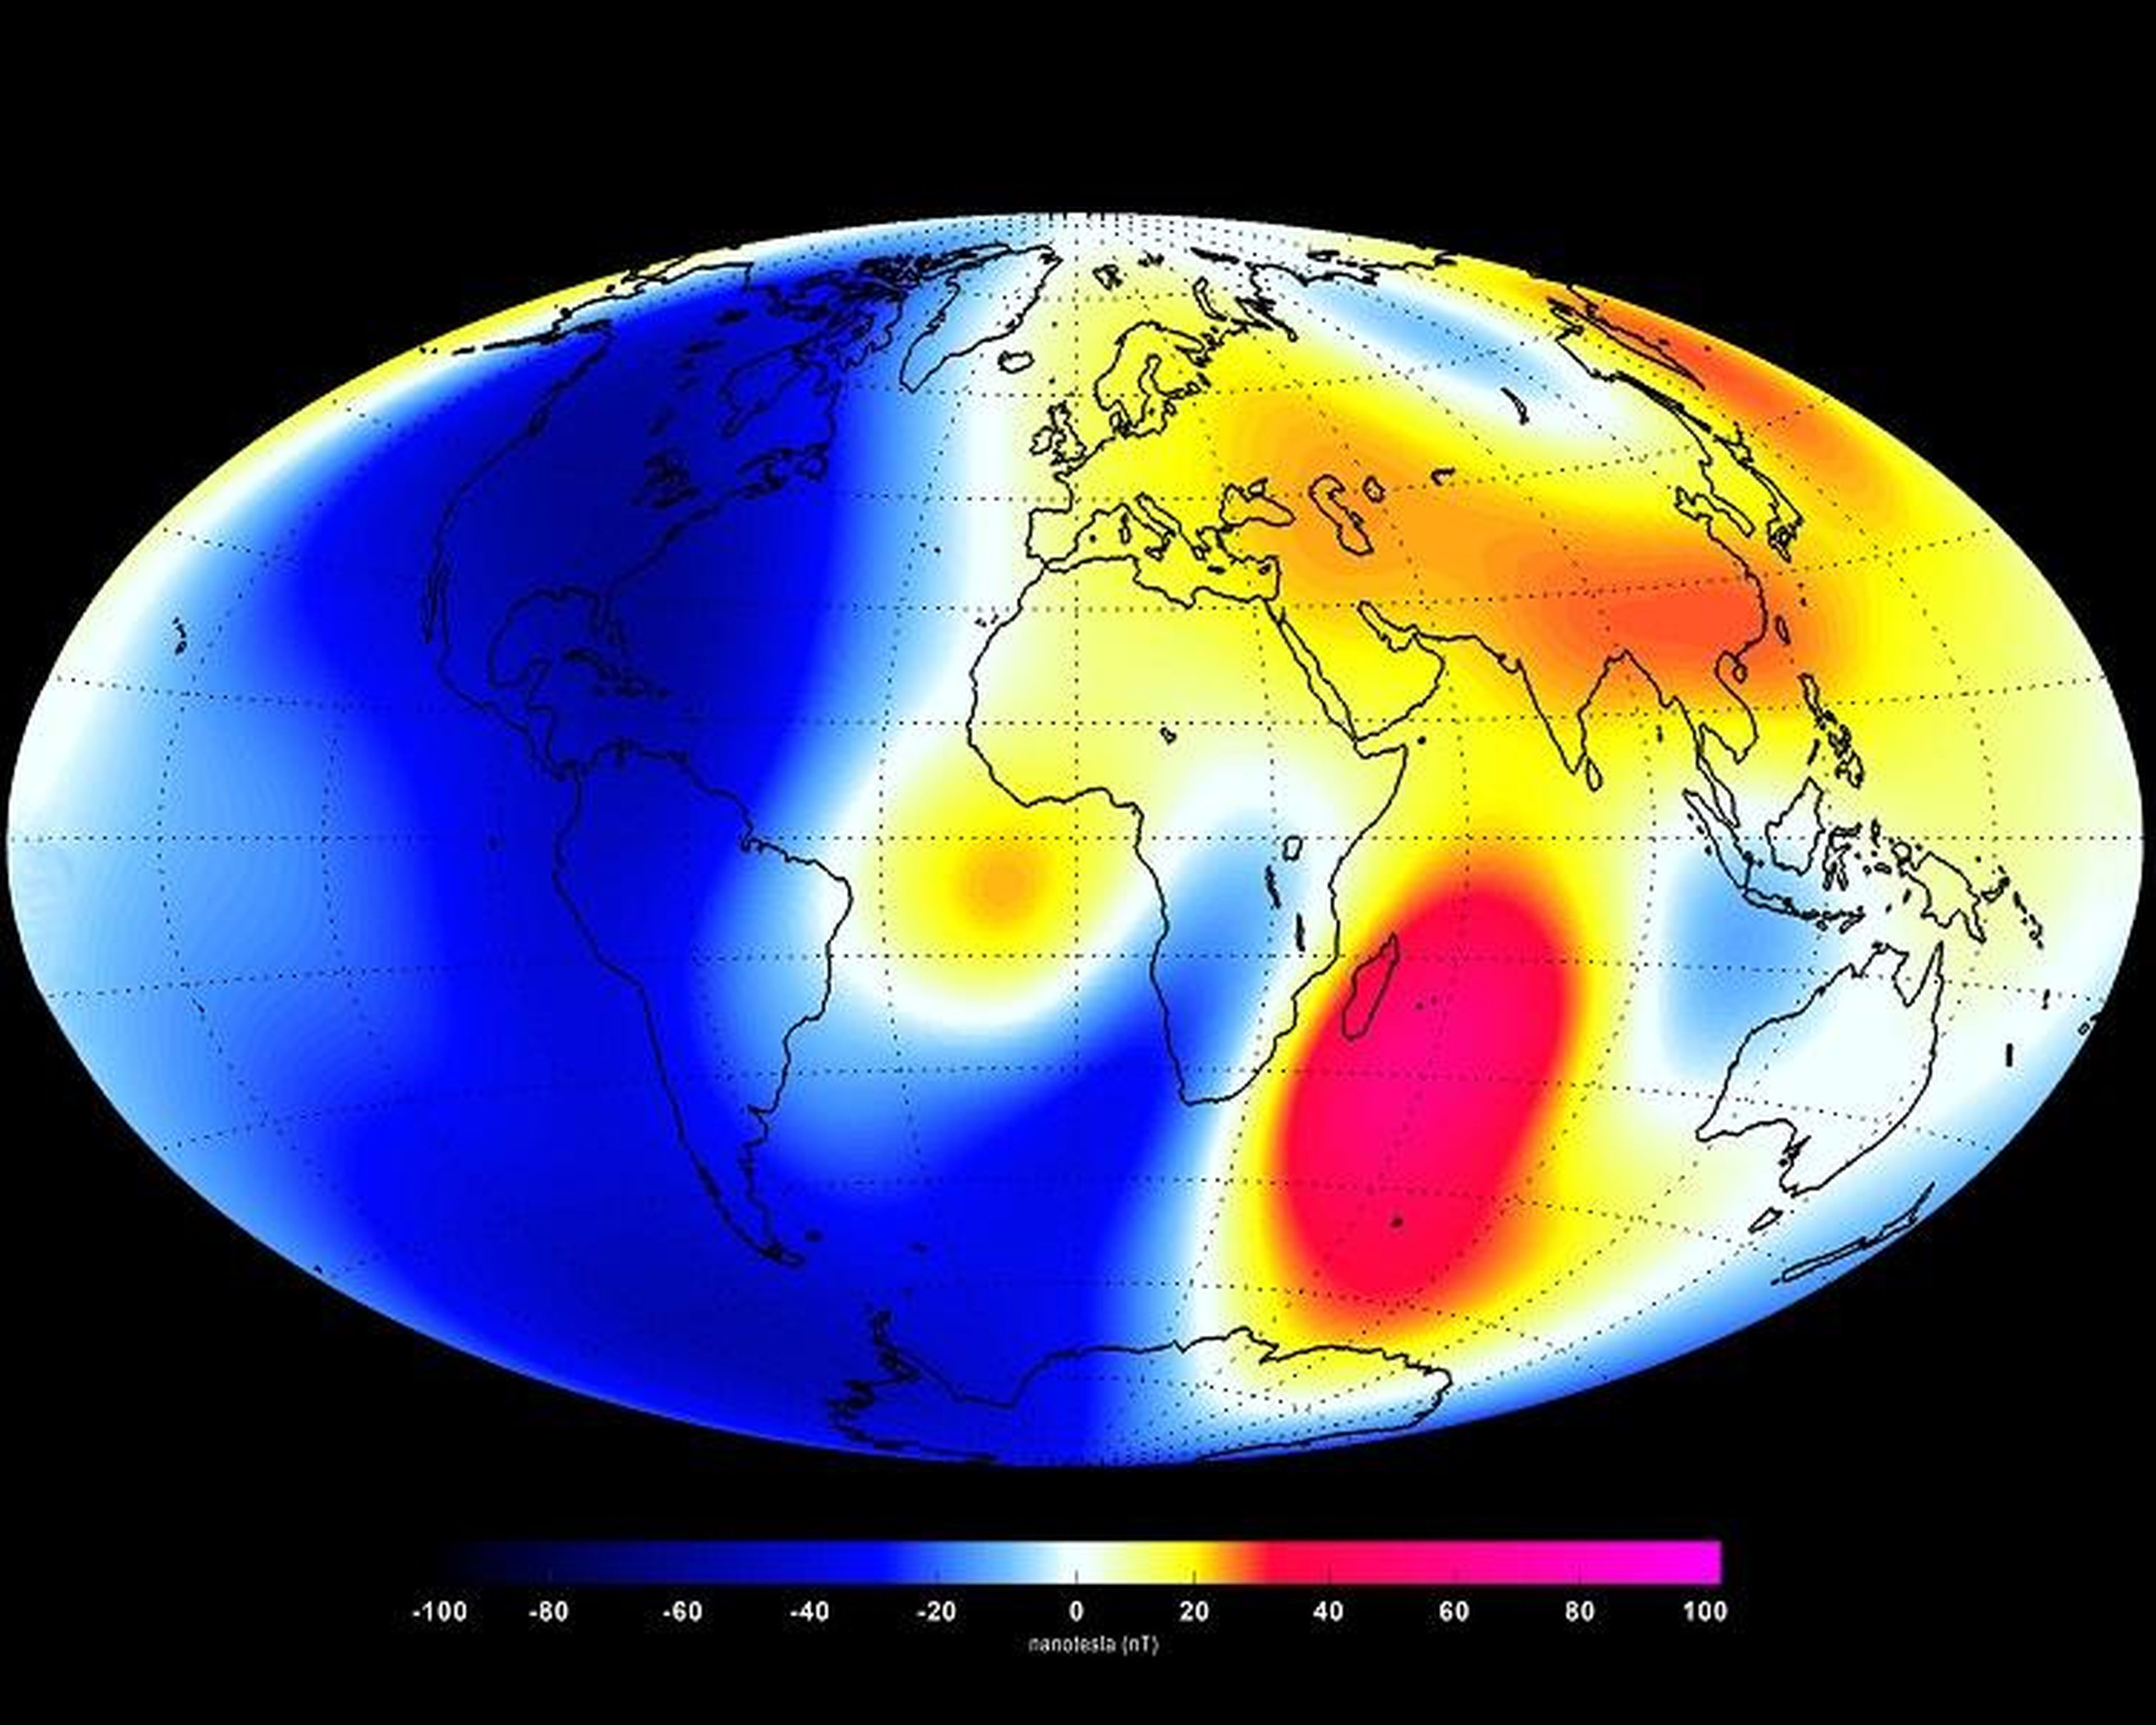 Una foto del campo magnético de la Tierra. Los tonos rojos muestran las áreas donde el campo es más fuerte, y los tonos azules muestran las áreas que son más débiles.